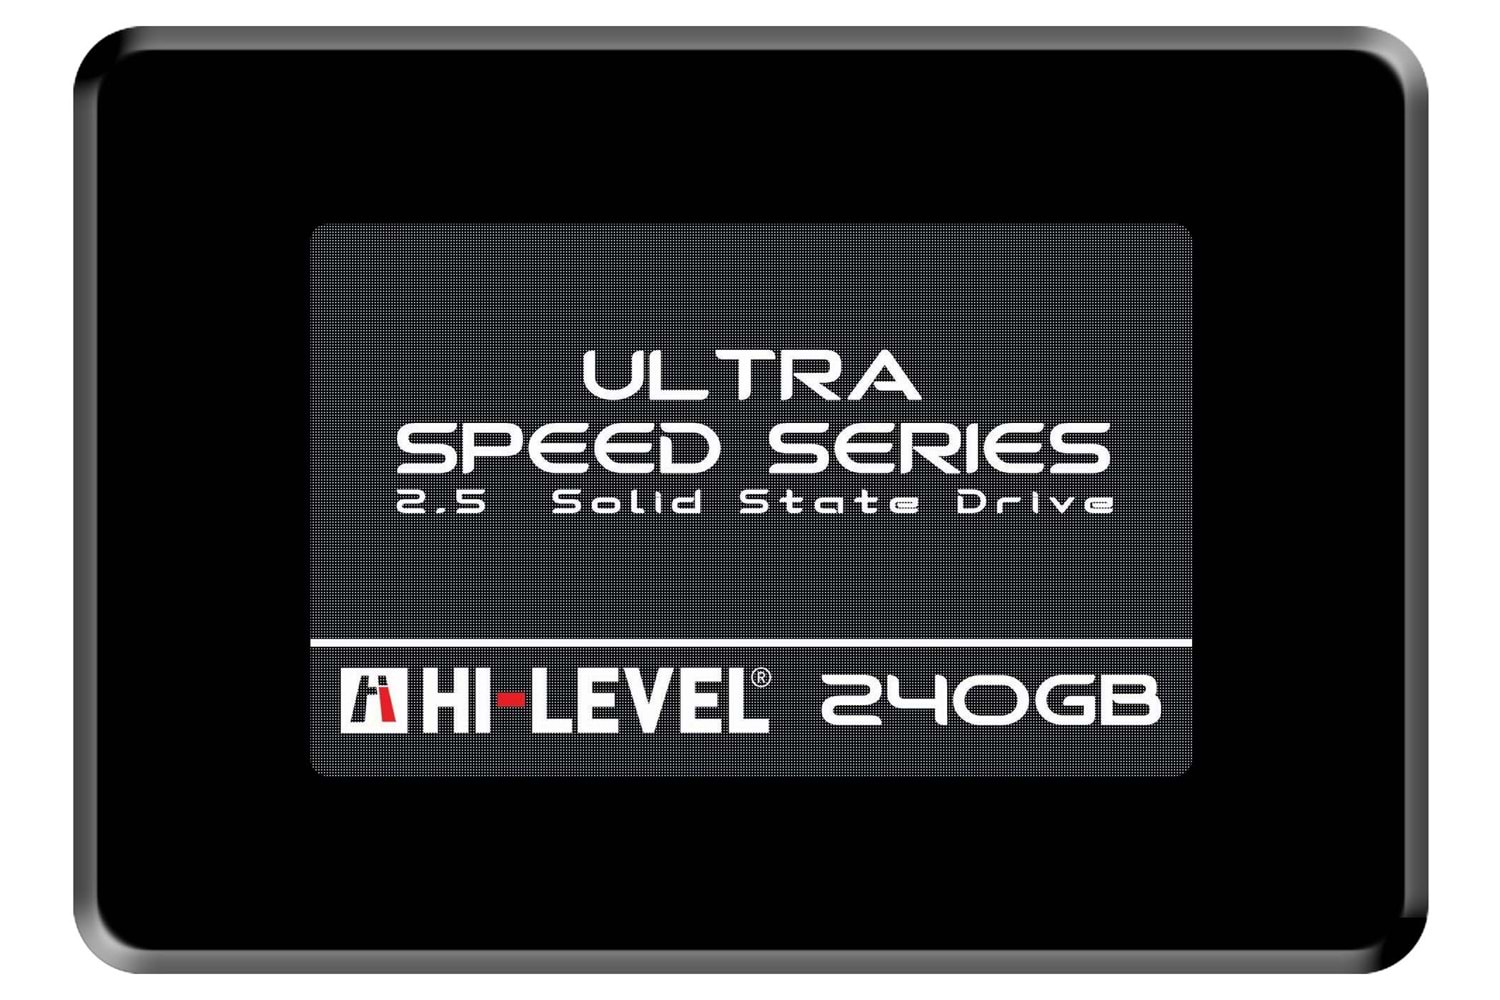 Hi-Level UltraSpeed 240GB SSD 2.5